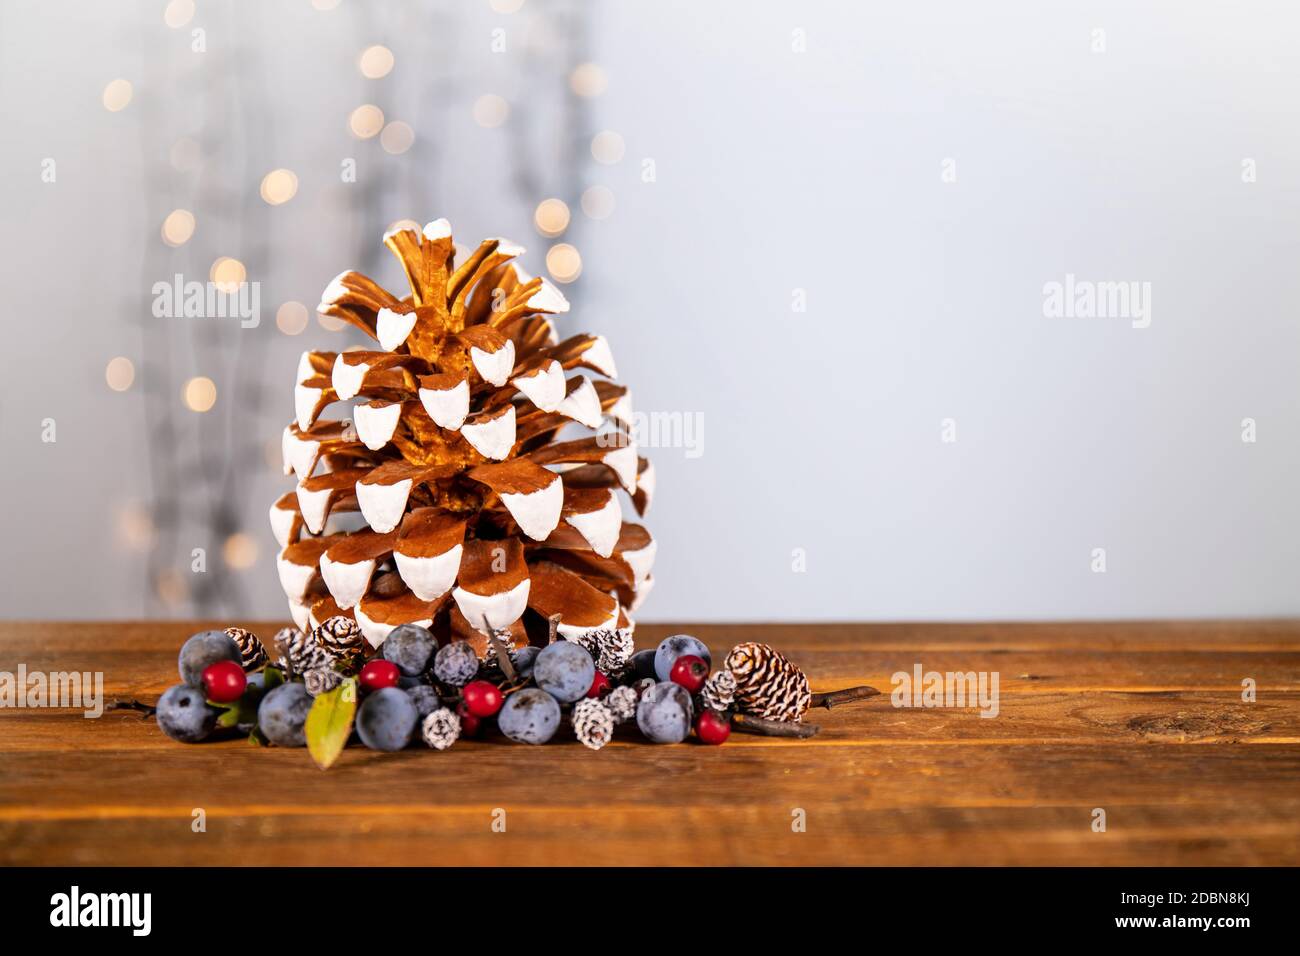 Brillante atmosfera natalizia con materiali naturali: oro e bianco dipinto a mano pinecone impreziosito da bacche blu e rosso disposti sul tavolo Foto Stock